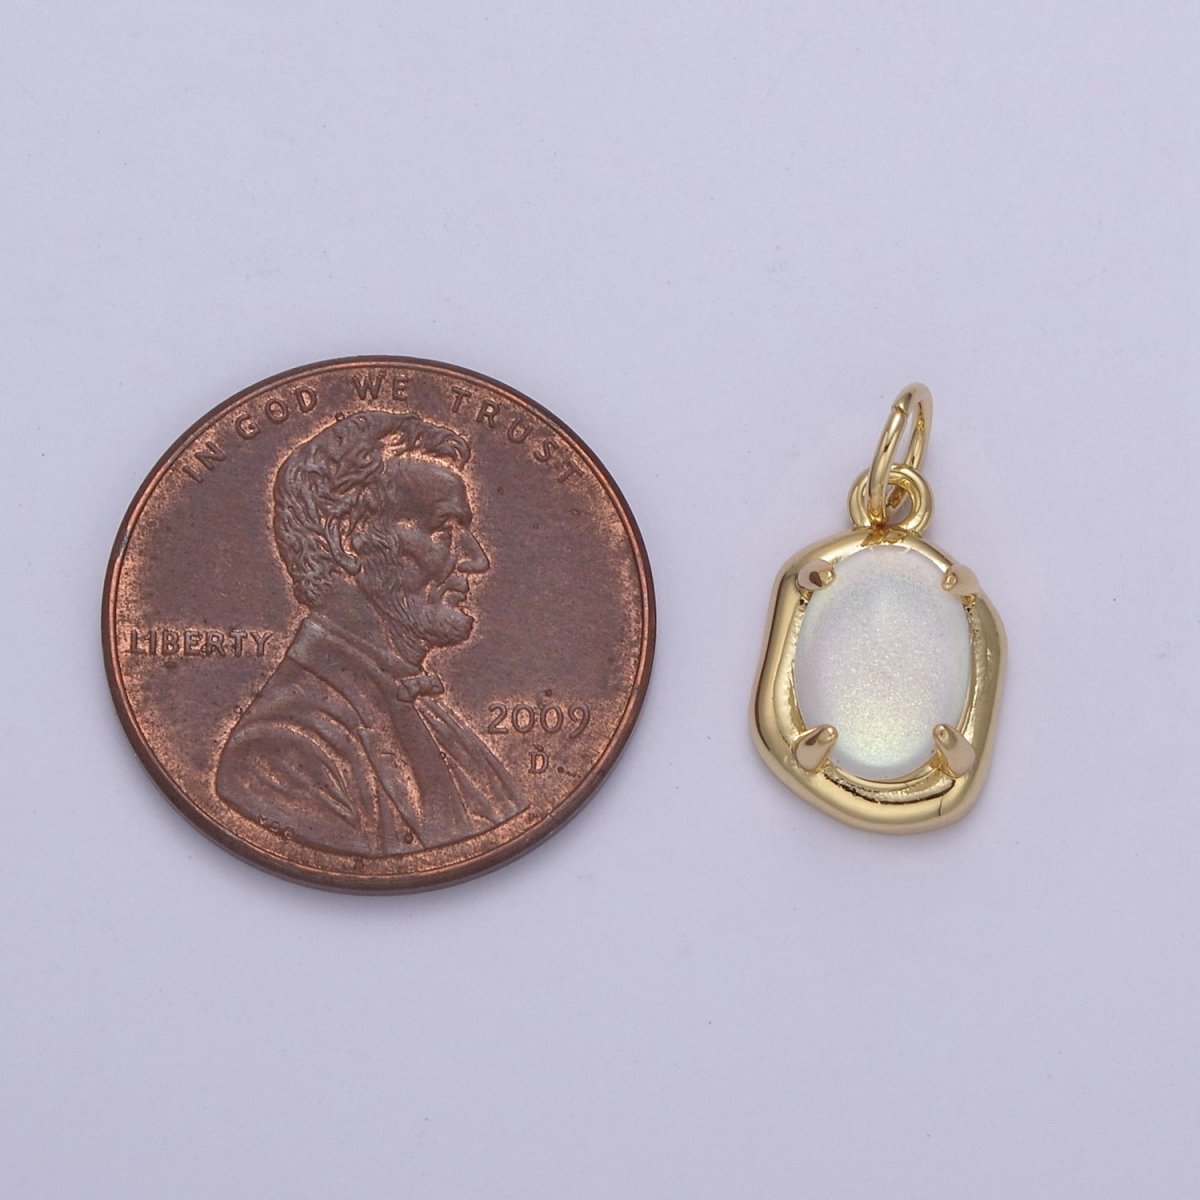 Mini Gold Oval Charm with Opal Stone for Minimalist Jewelry N-464 N-465 N-466 N-467 - DLUXCA